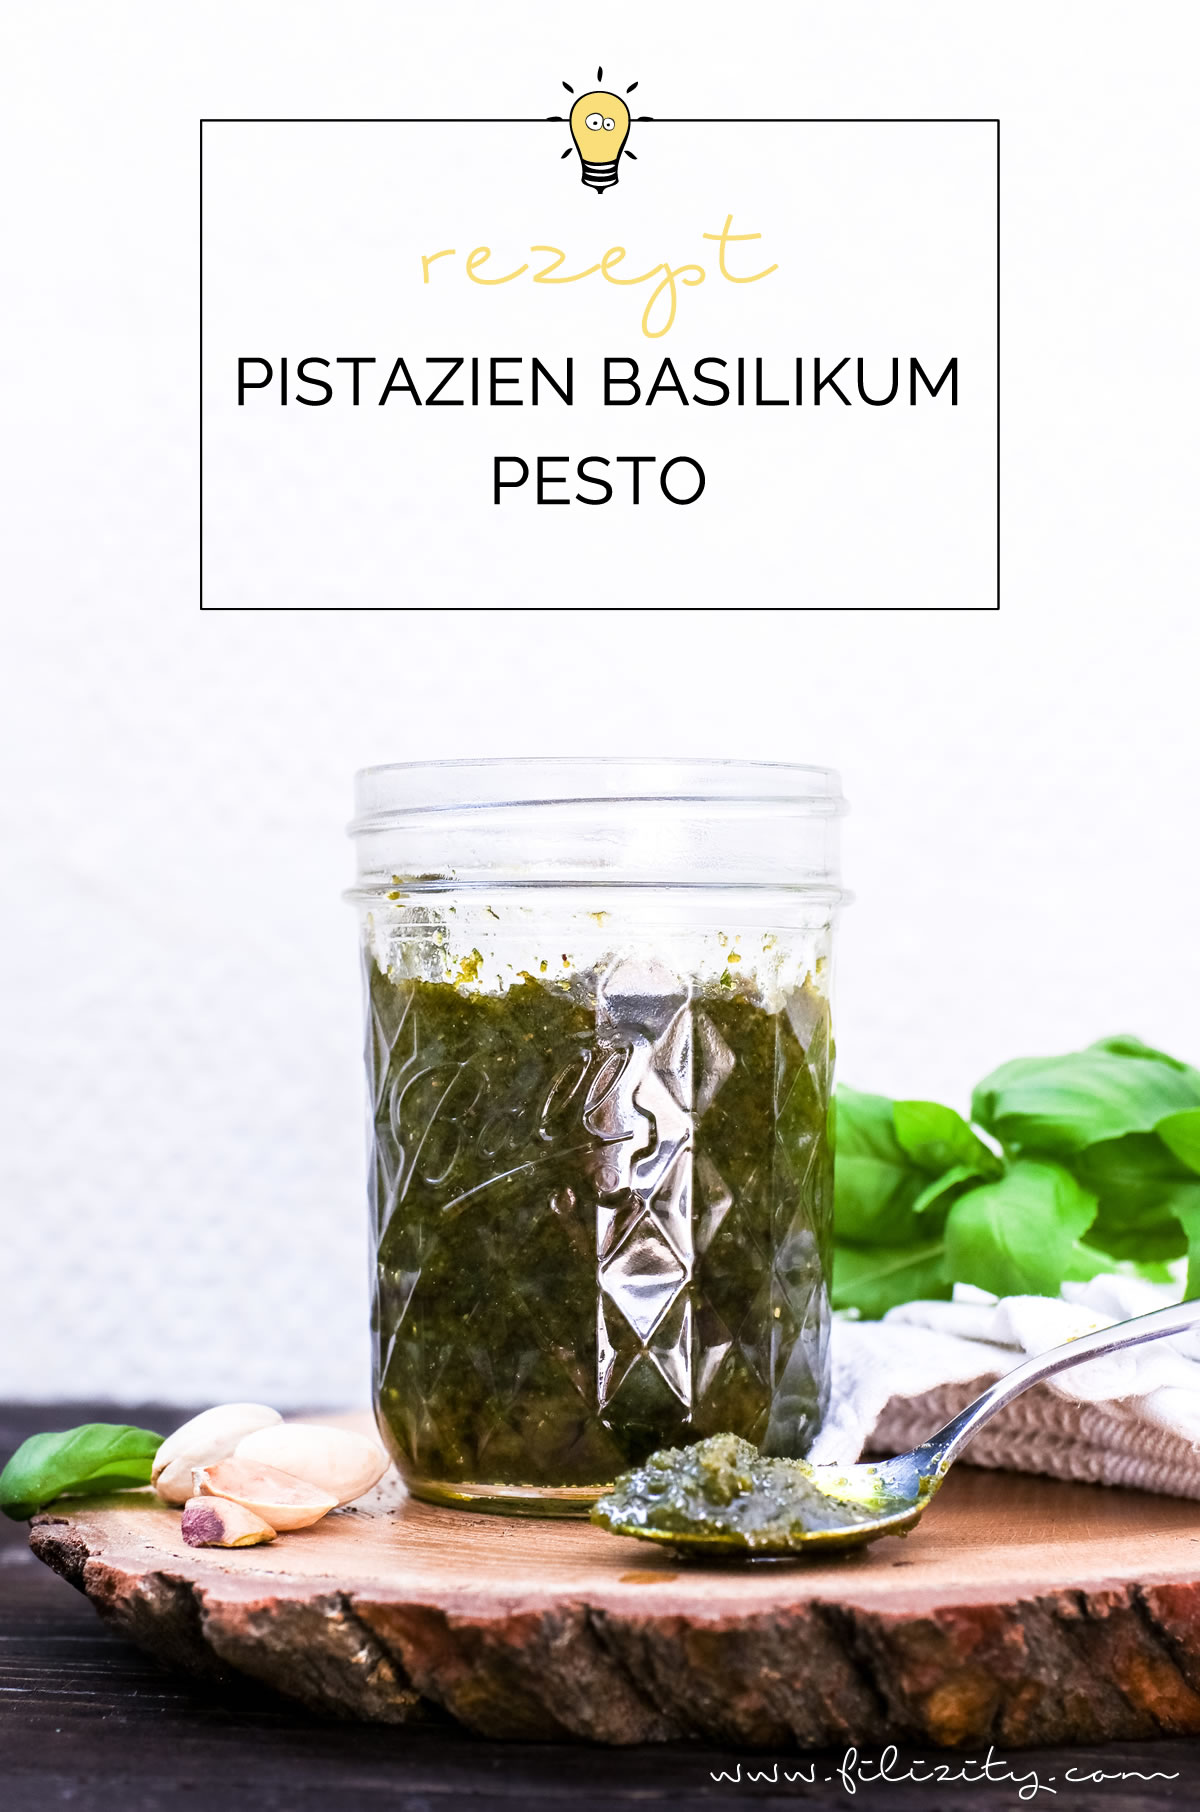 Himmlisches Pesto Rezept: Pistazien-Basilikum-Pesto selber machen | Filizity.com | Food-Blog aus dem Rheinland